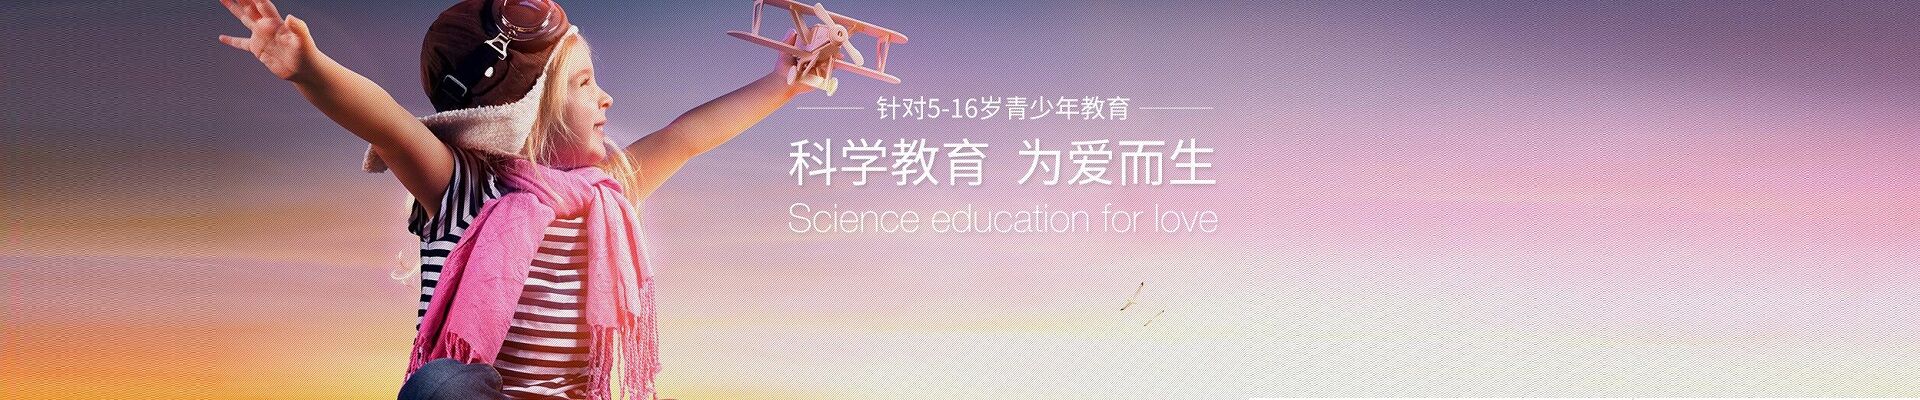 深圳博沃思教育